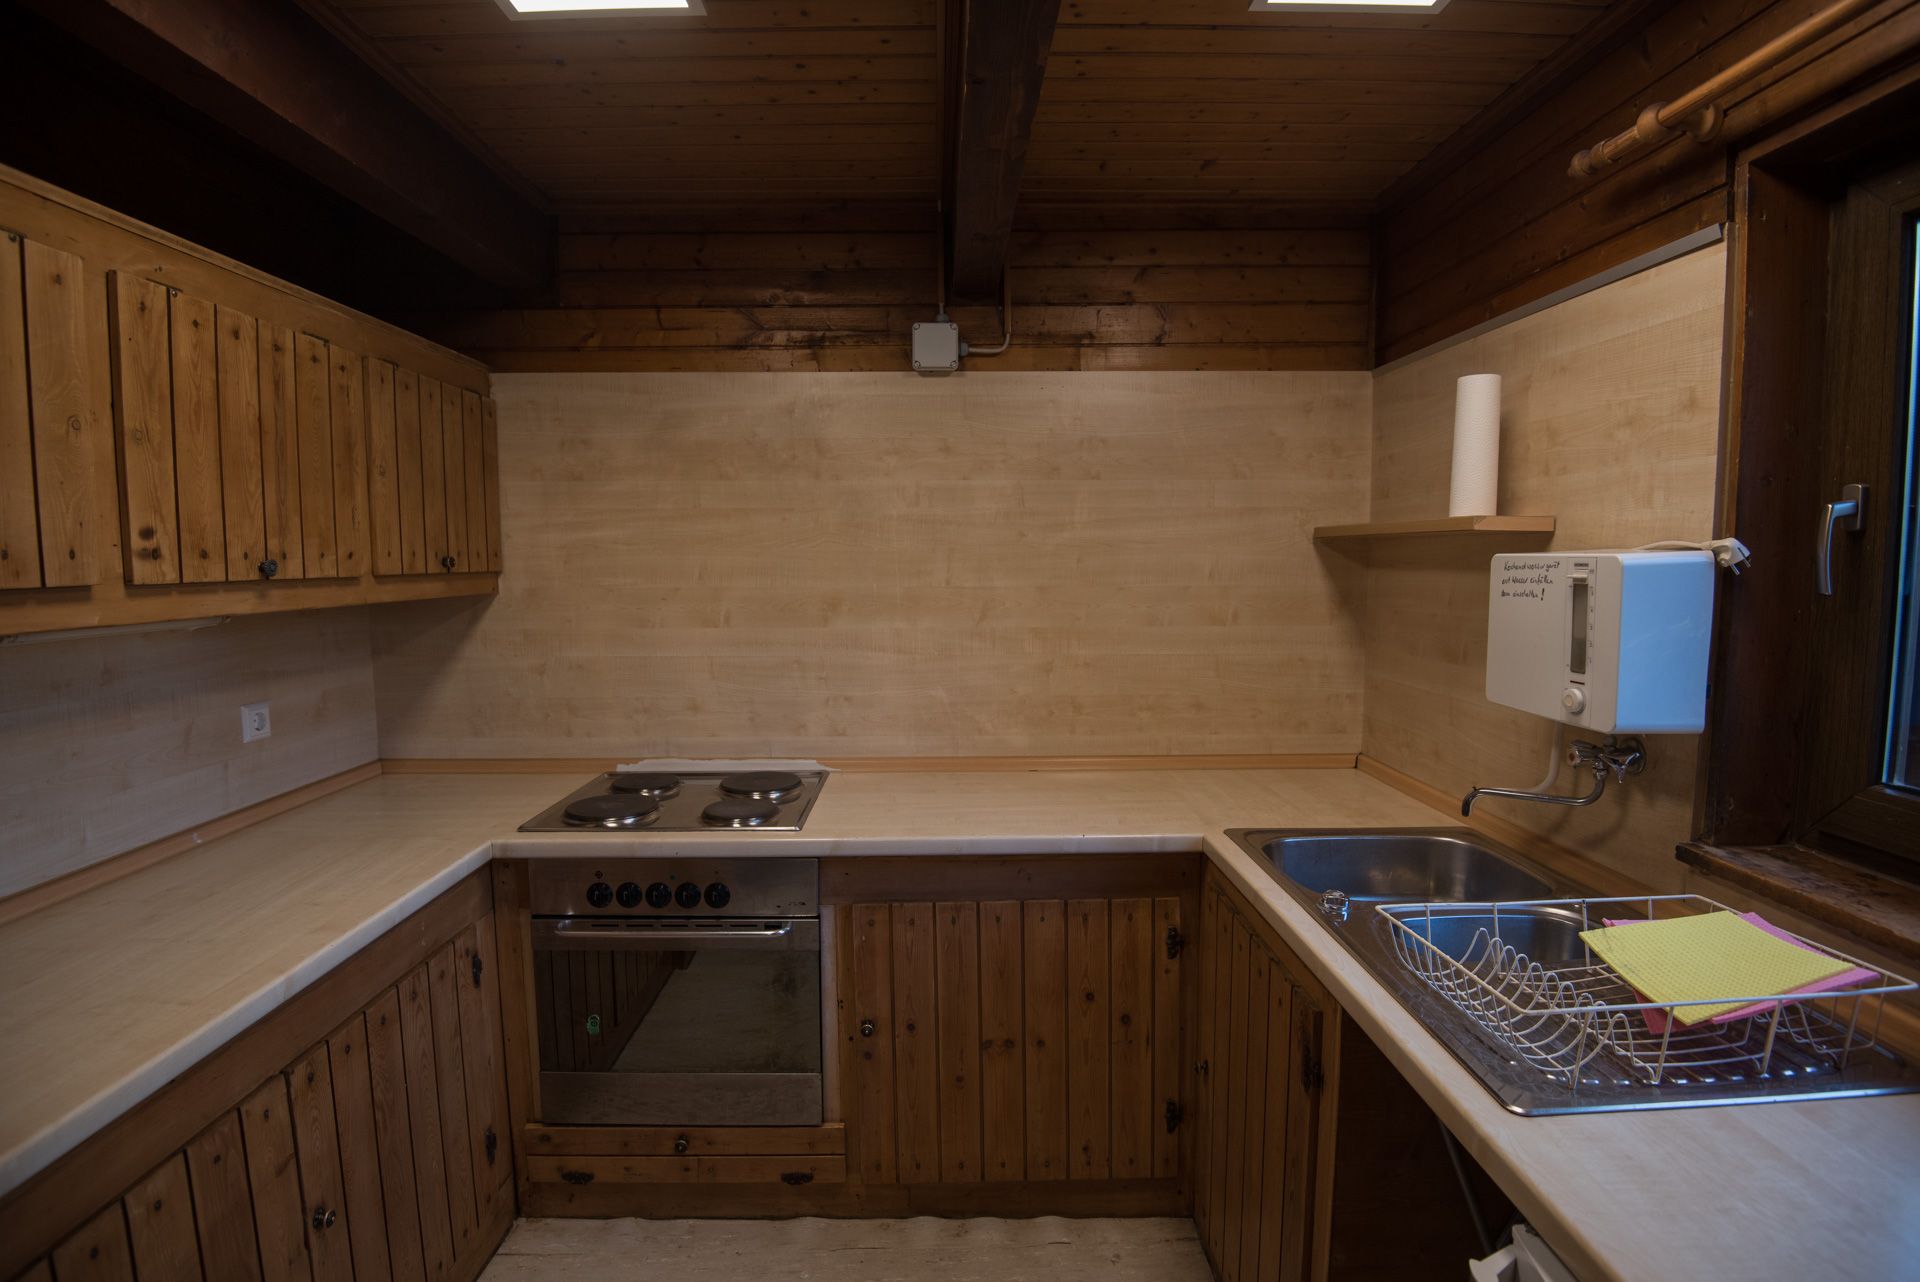 Küche in der Hütte mit Kühlschrank, Herd, Backofen und Kaffemaschine